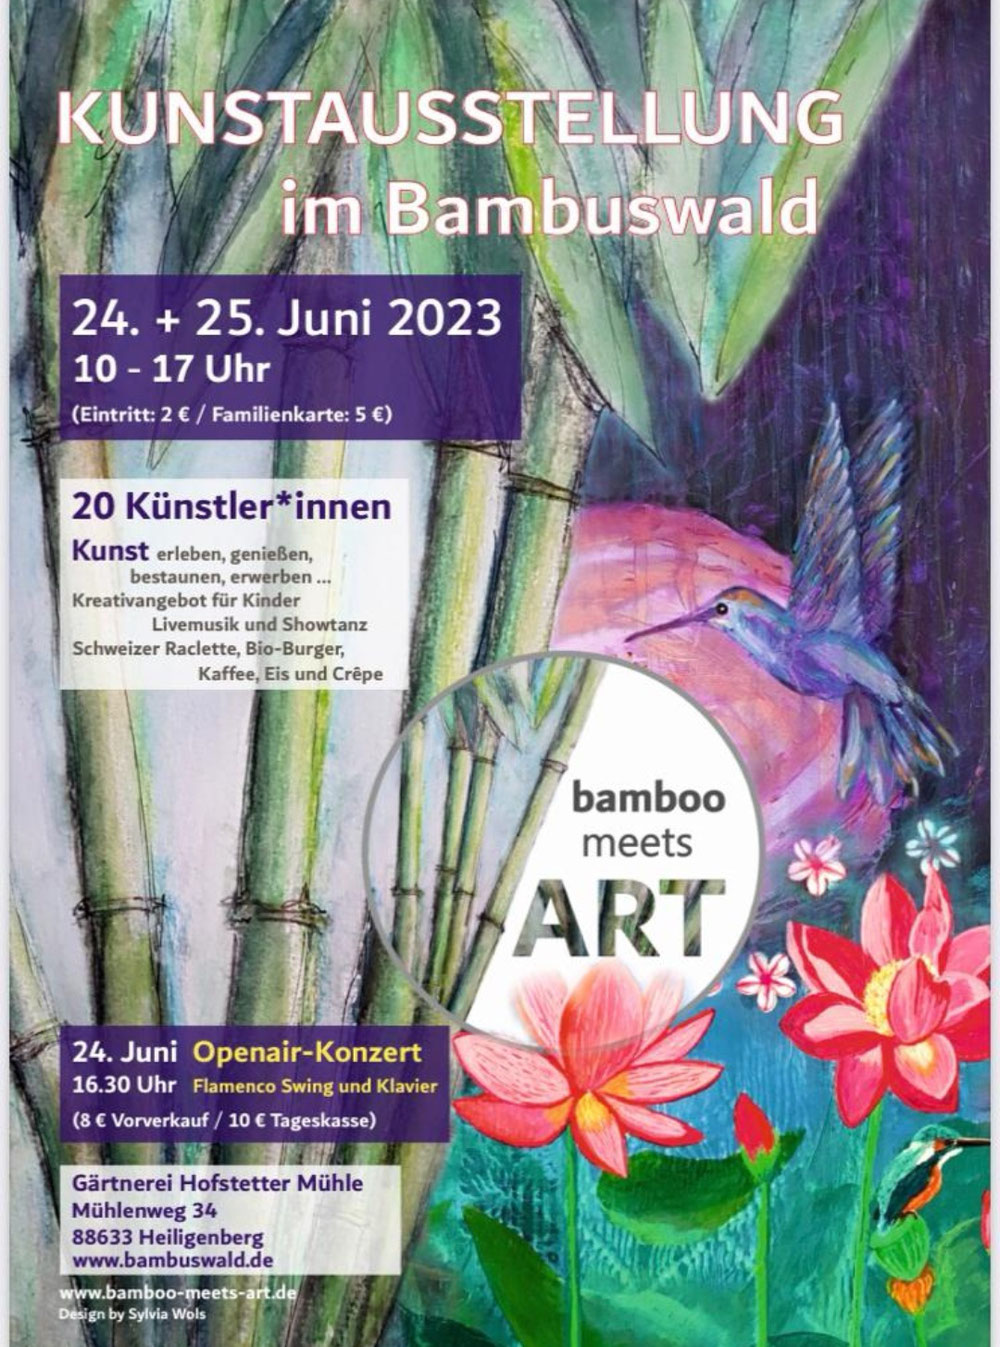  Bamboo meets Art in HEILIGENBERG bei Salem 